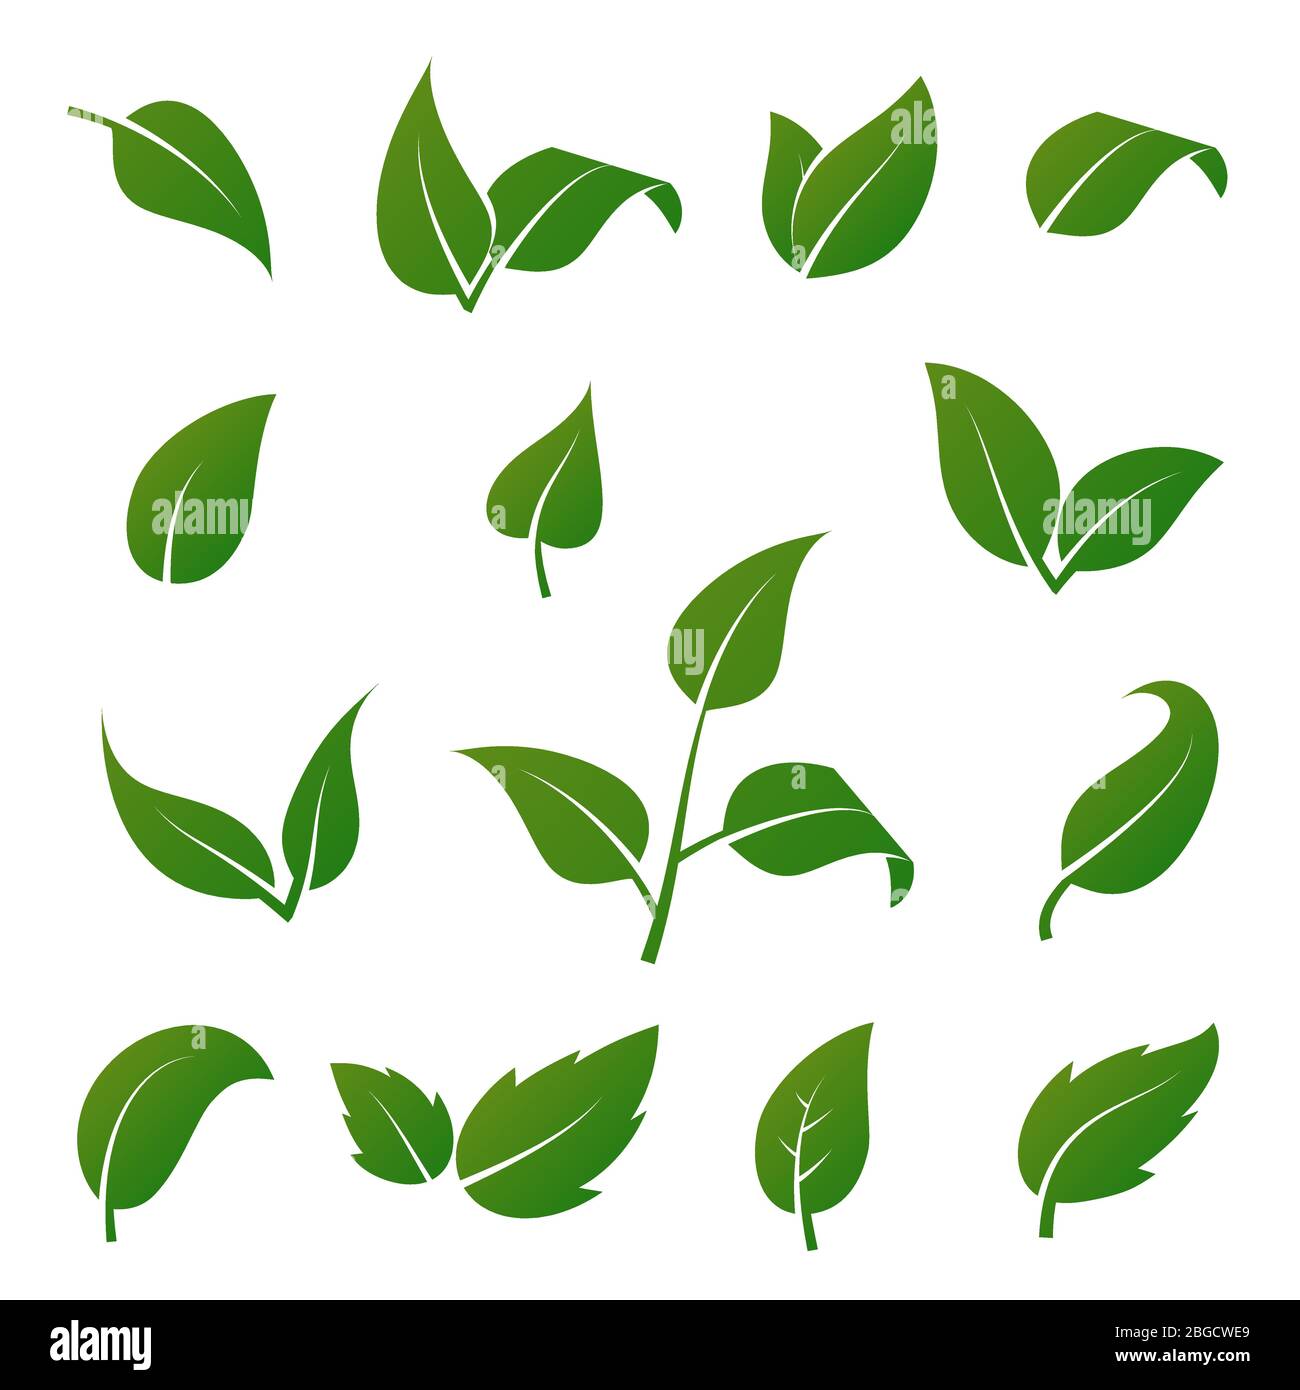 L'arbre vert et la plante laisse des icônes vectorielles isolées sur fond blanc. Jeu de symboles ECO. Feuille verte végétale, illustration florale naturelle biologique Illustration de Vecteur